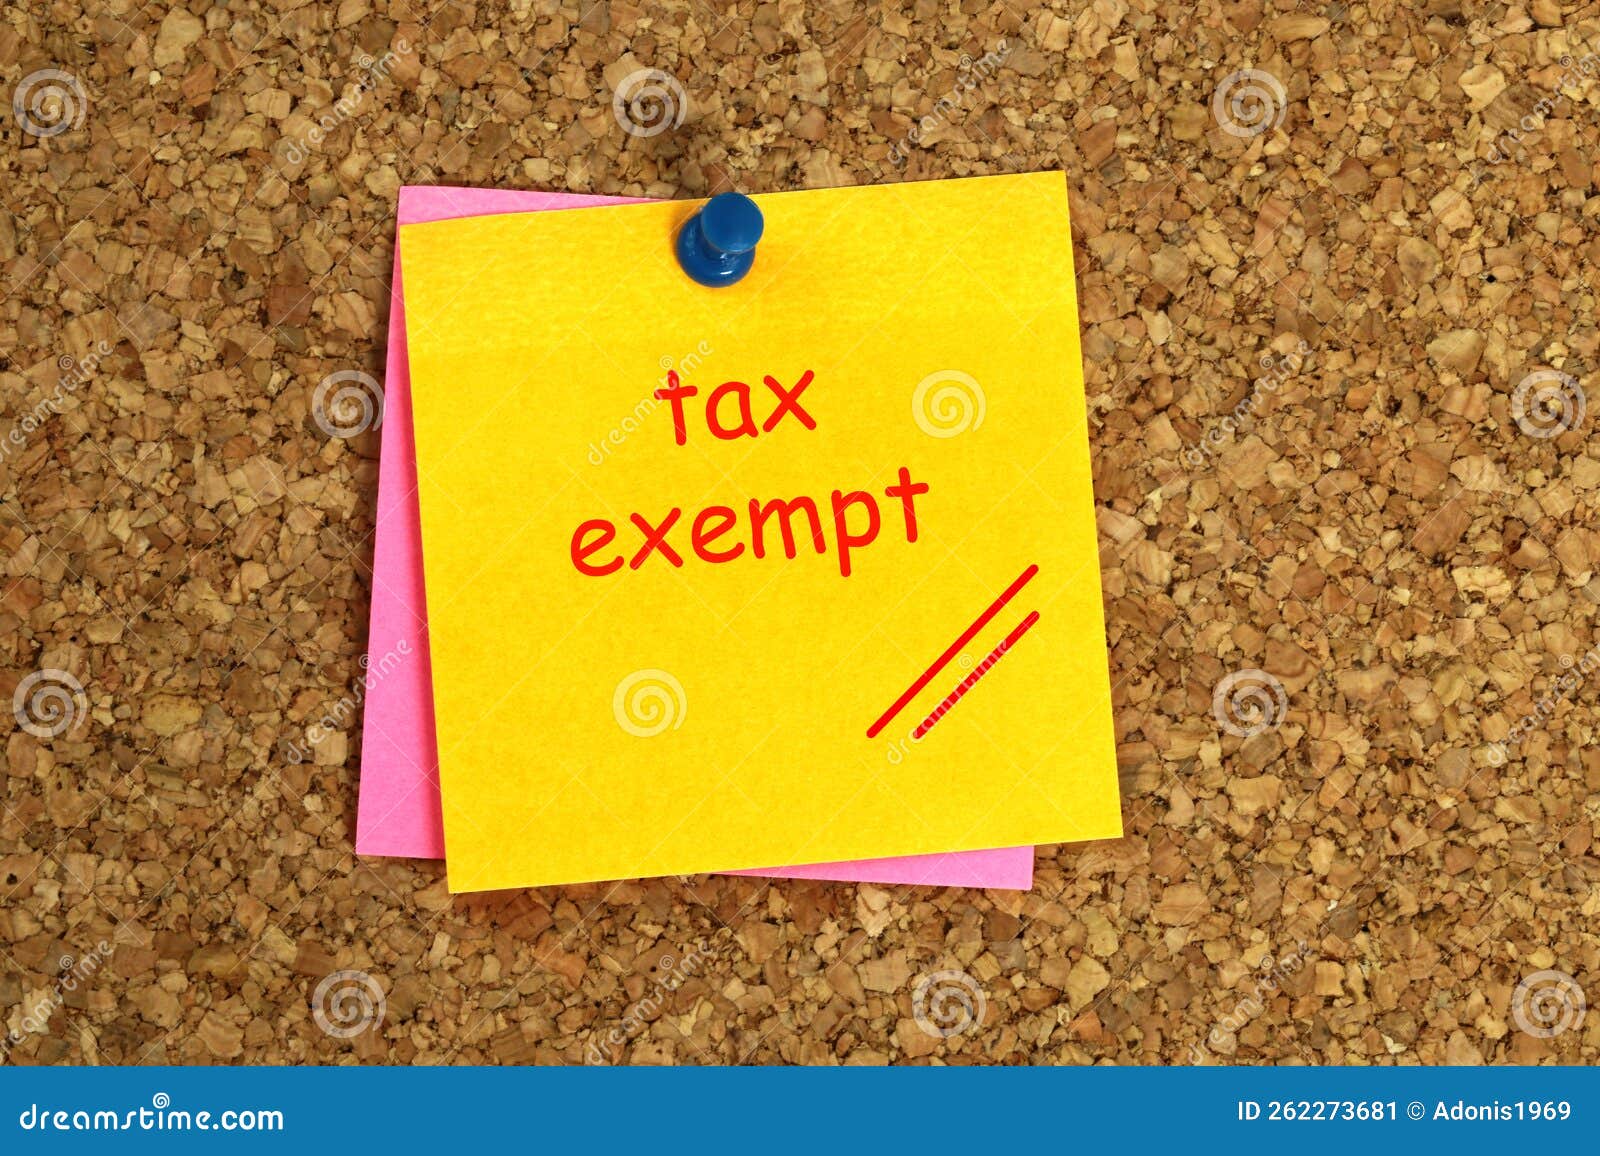 tax exempt postit on cork